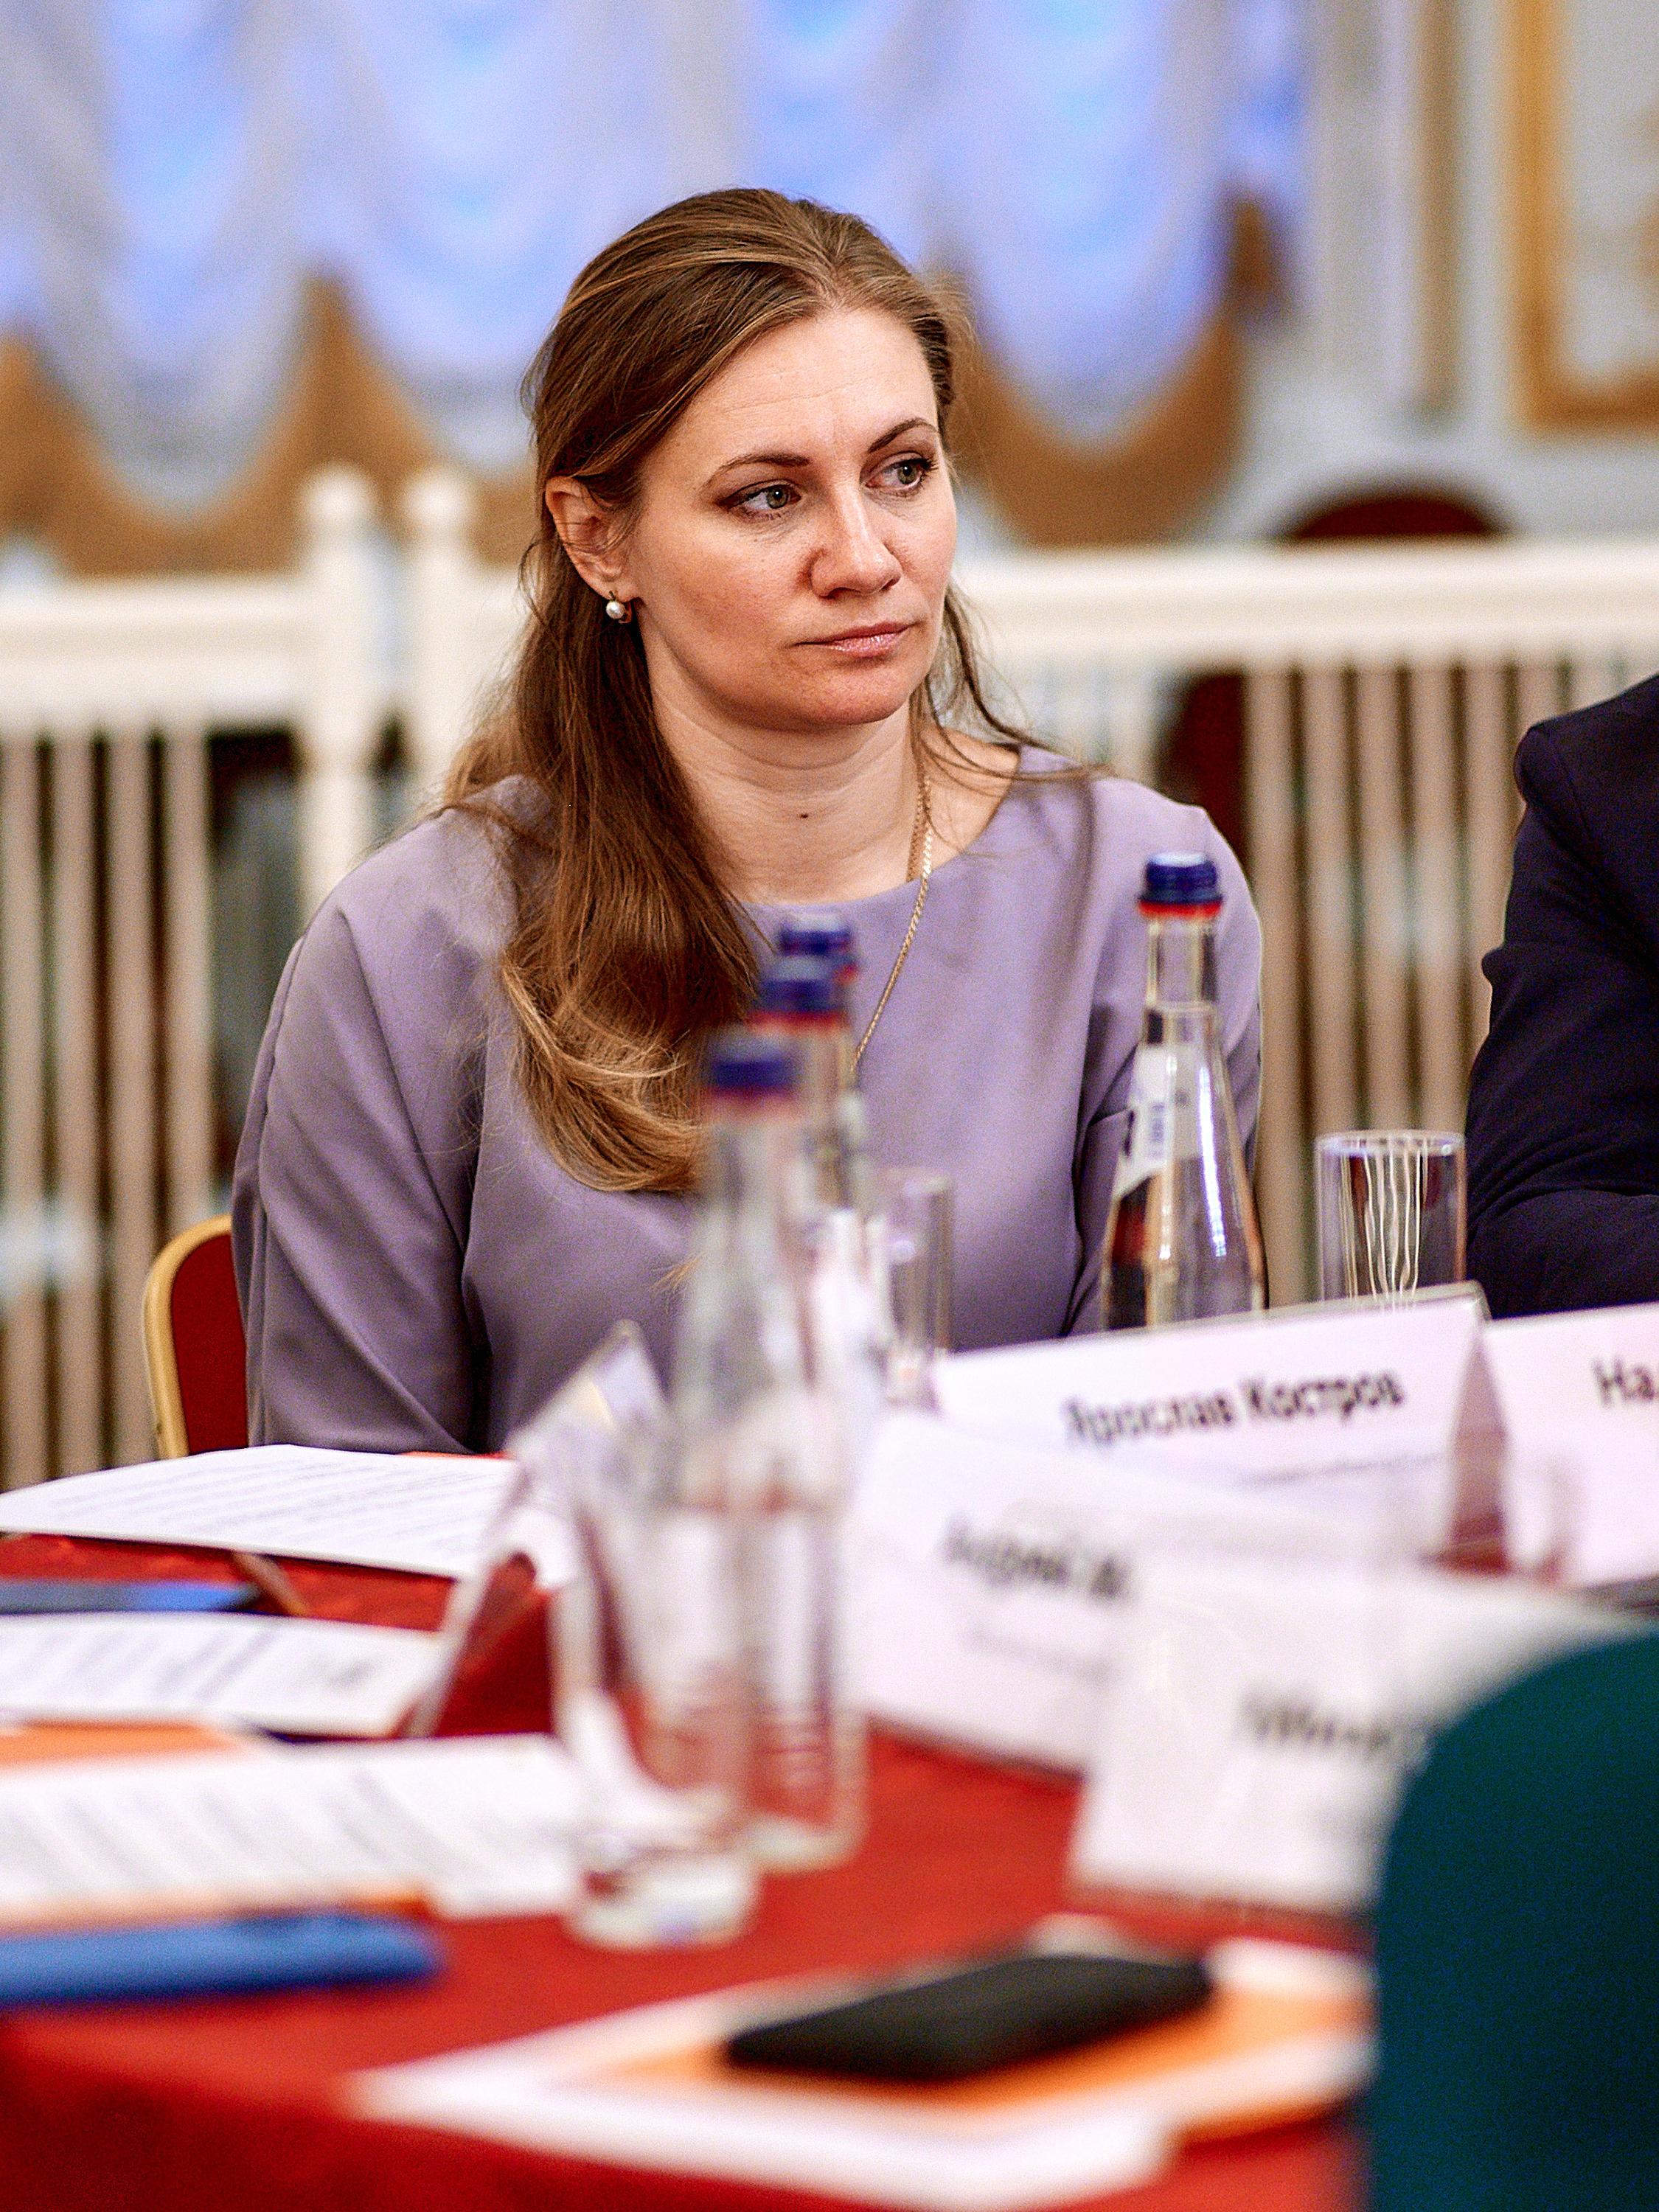 Надежда Акулова, архитектор-реставратор, доцент Санкт-Петербургского государственного архитектурно-строительного университета